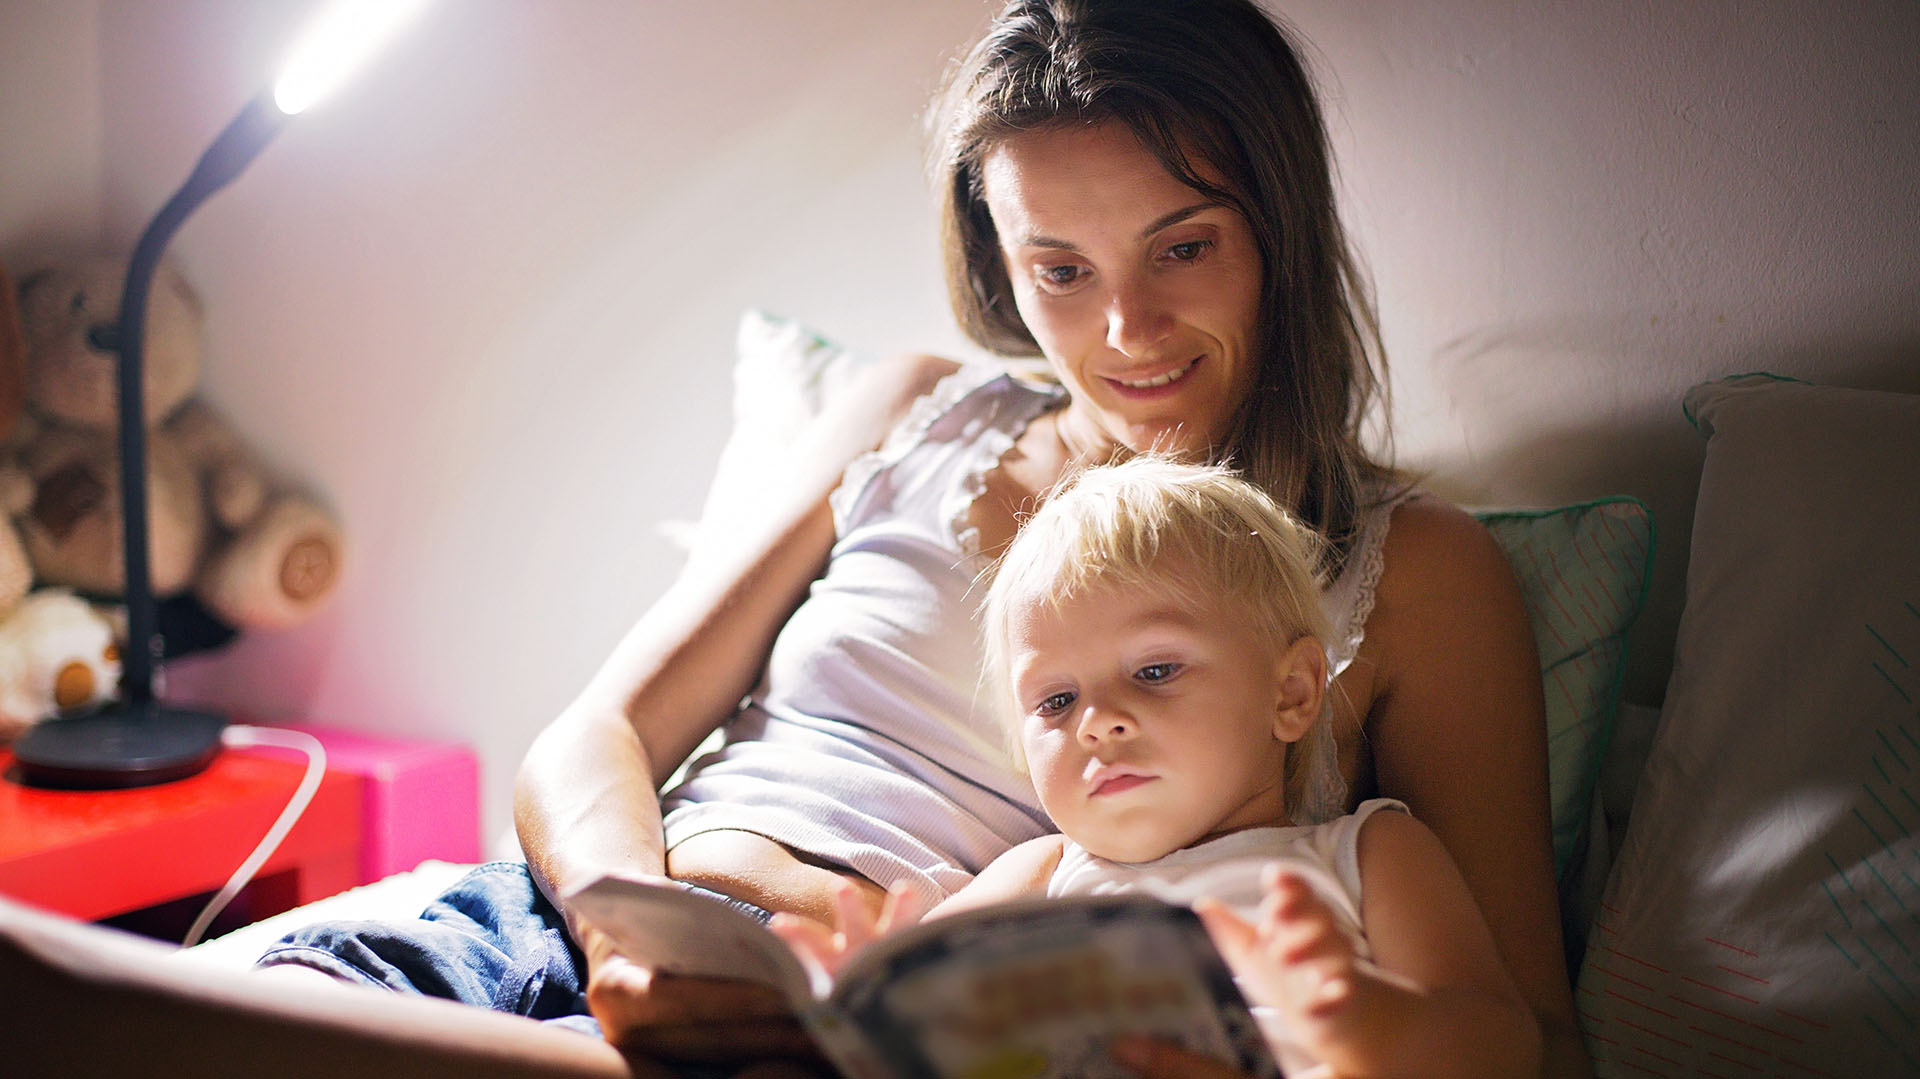 “Leer un cuento y acompañar al niño hasta que se duerma”, es uno de los consejos que brinda Gandsas a los padres que la consultan (Getty)